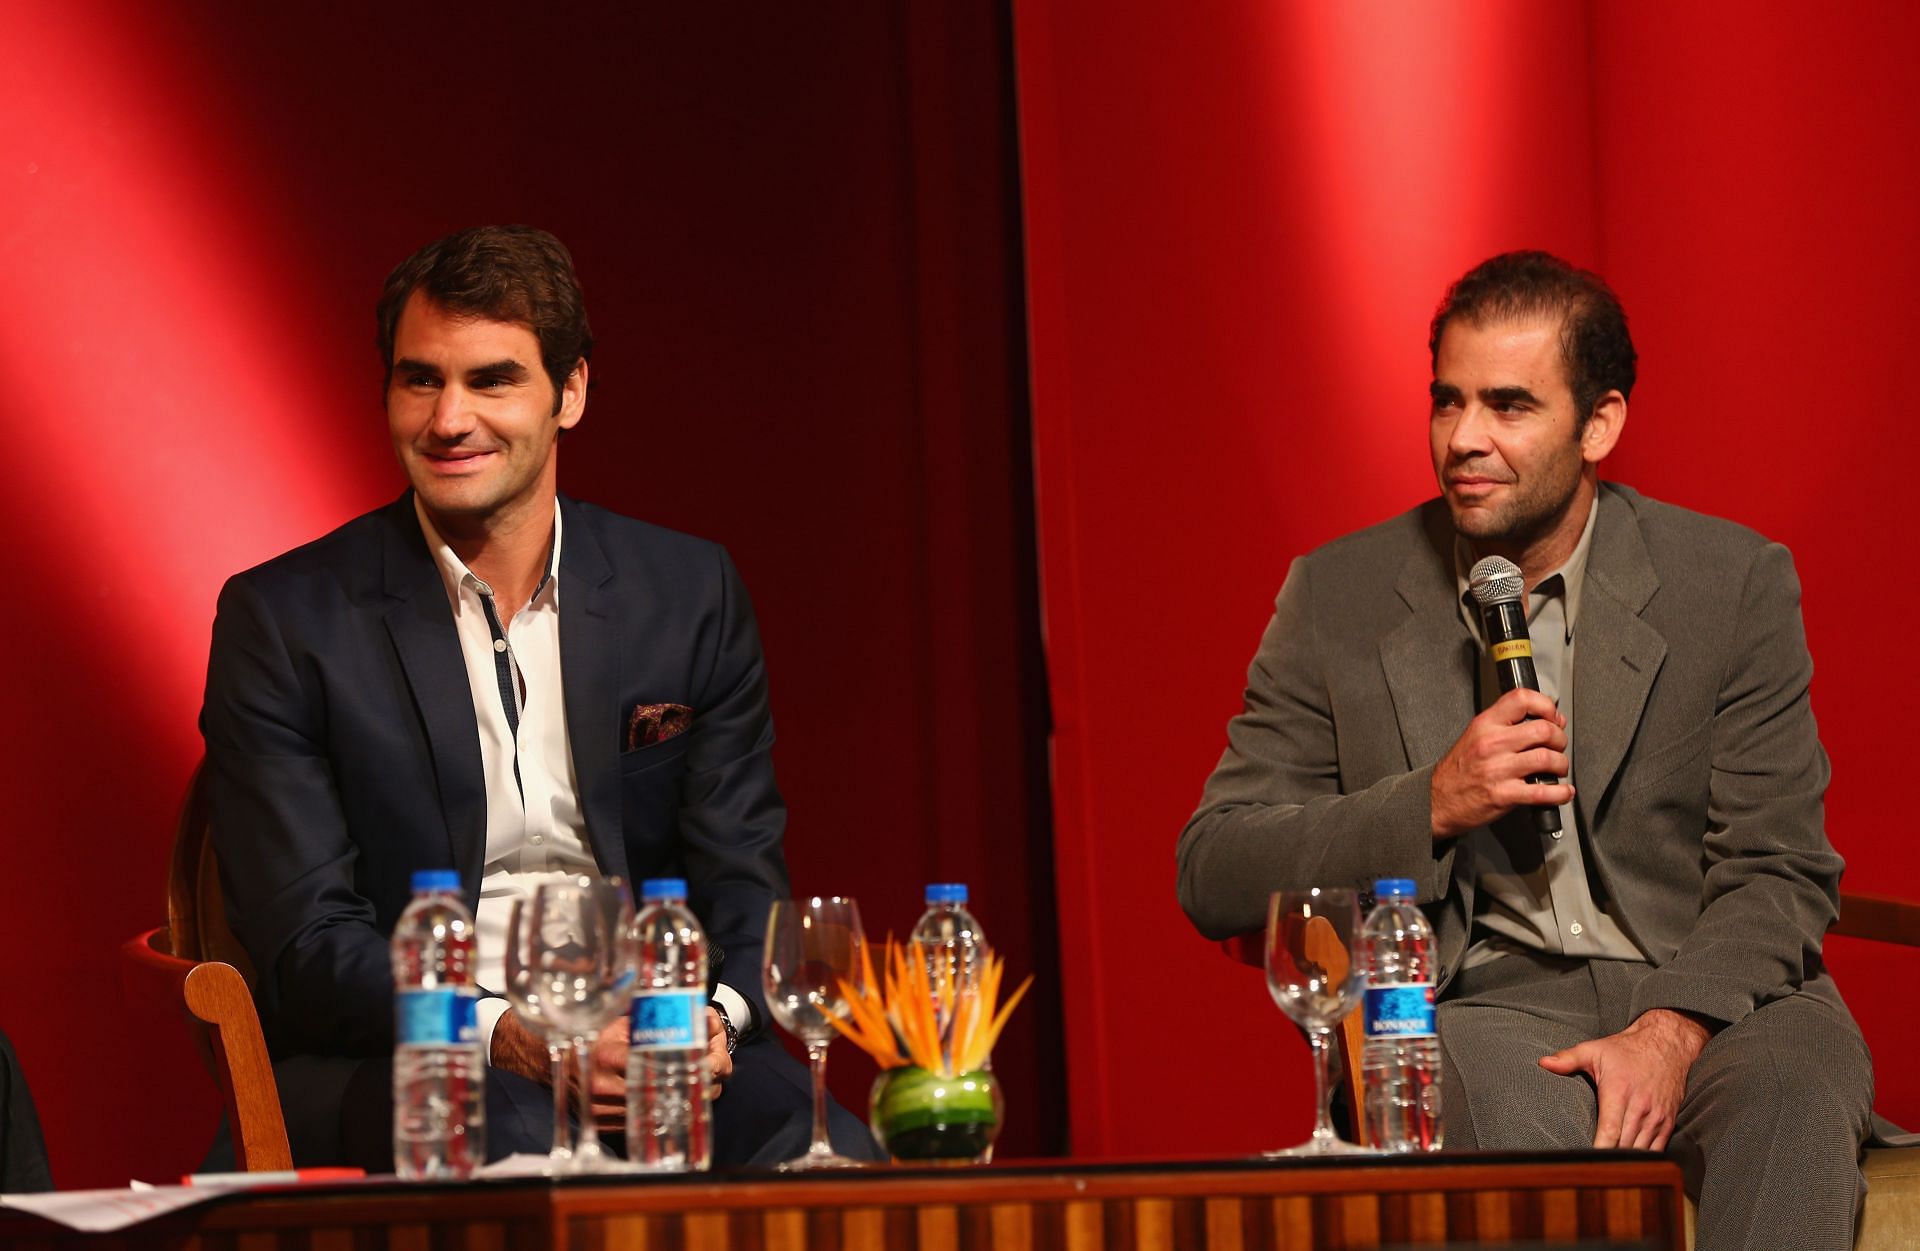 Roger Federer (left) and Pete Sampras